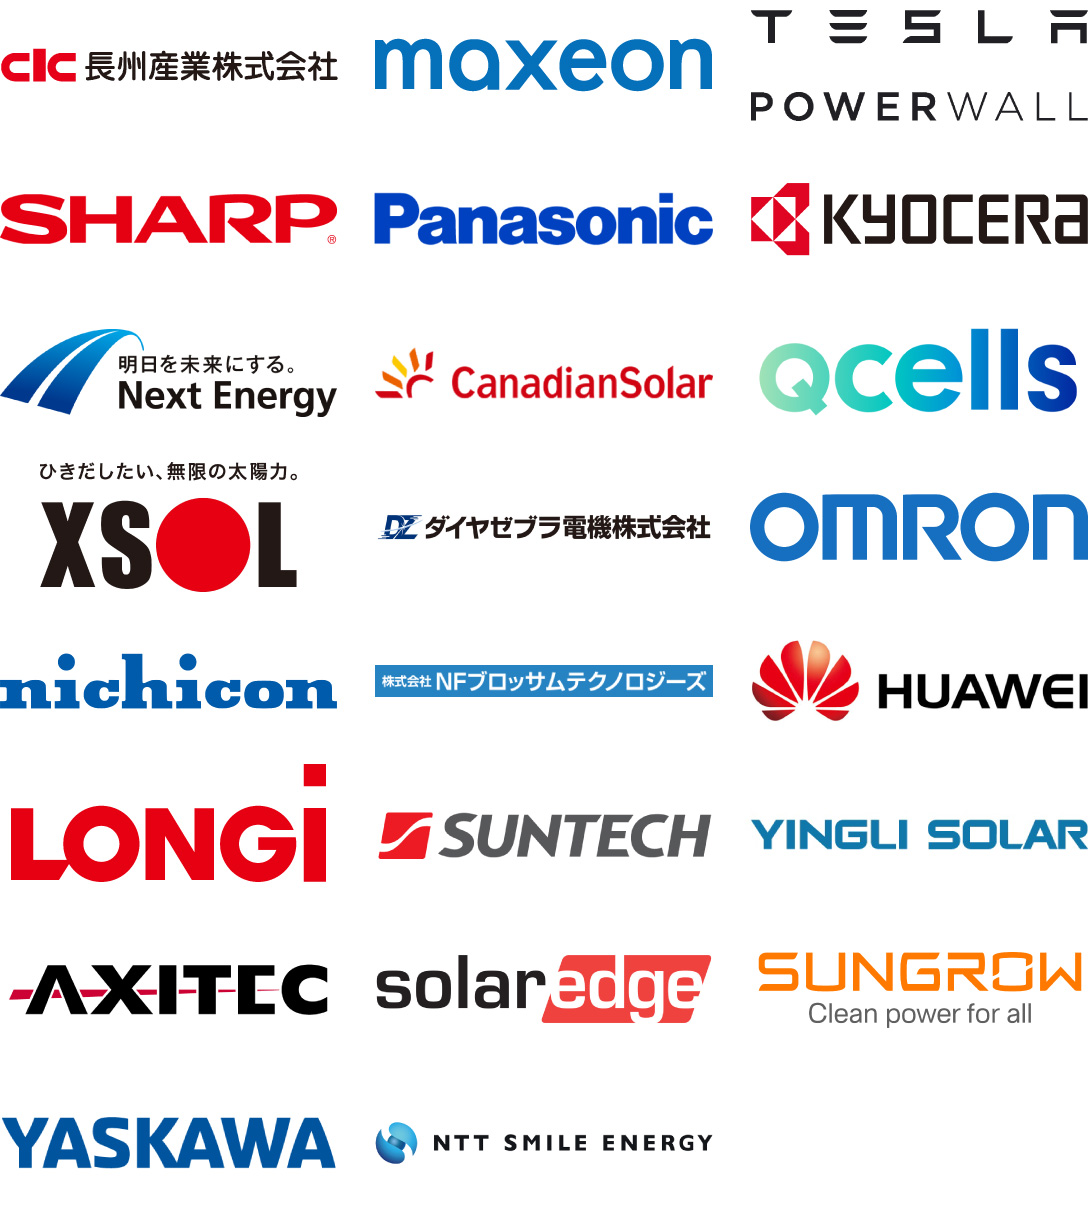 長州産業株式会社、maxeon、TESLA POWER WALL、SHARP、Panasonic、KYOCERA、Next Energy、Canadian Solar、Q CELLS、XSOL、ダイヤゼブラ電機株式会社、OMRON、nichicon、株式会社NFブロッサムテクノロジーズ、HUAWEI、LONGi、SUNTECH、YINGLI SOLAR、AXITEC、SUNGROW、YASKAWA、NTT SMILE ENERGY